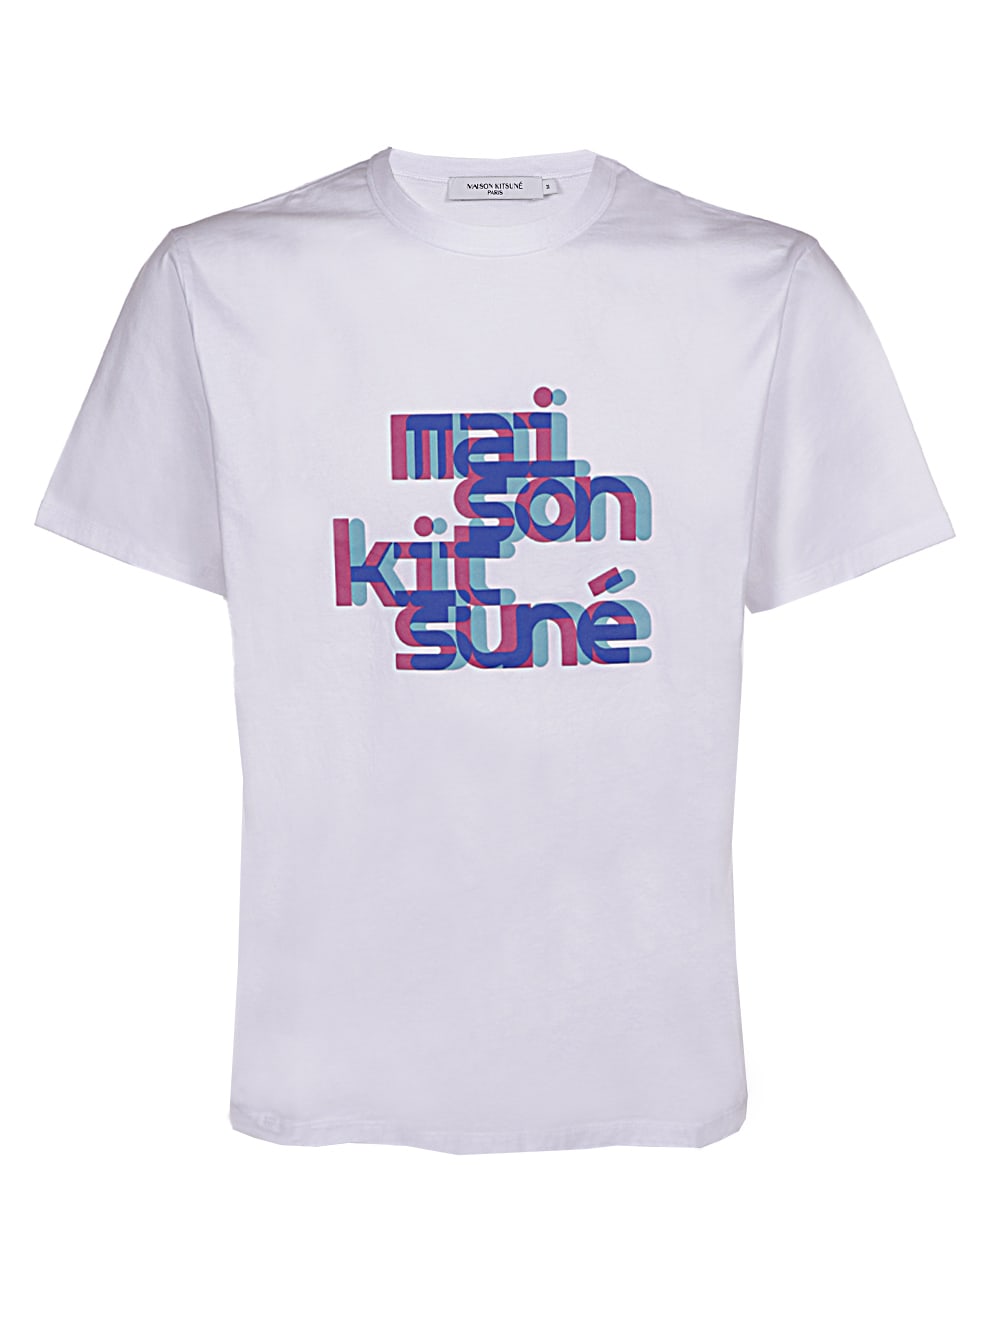 Maison Kitsuné Neon Offset Typo Classic Tee-shirt